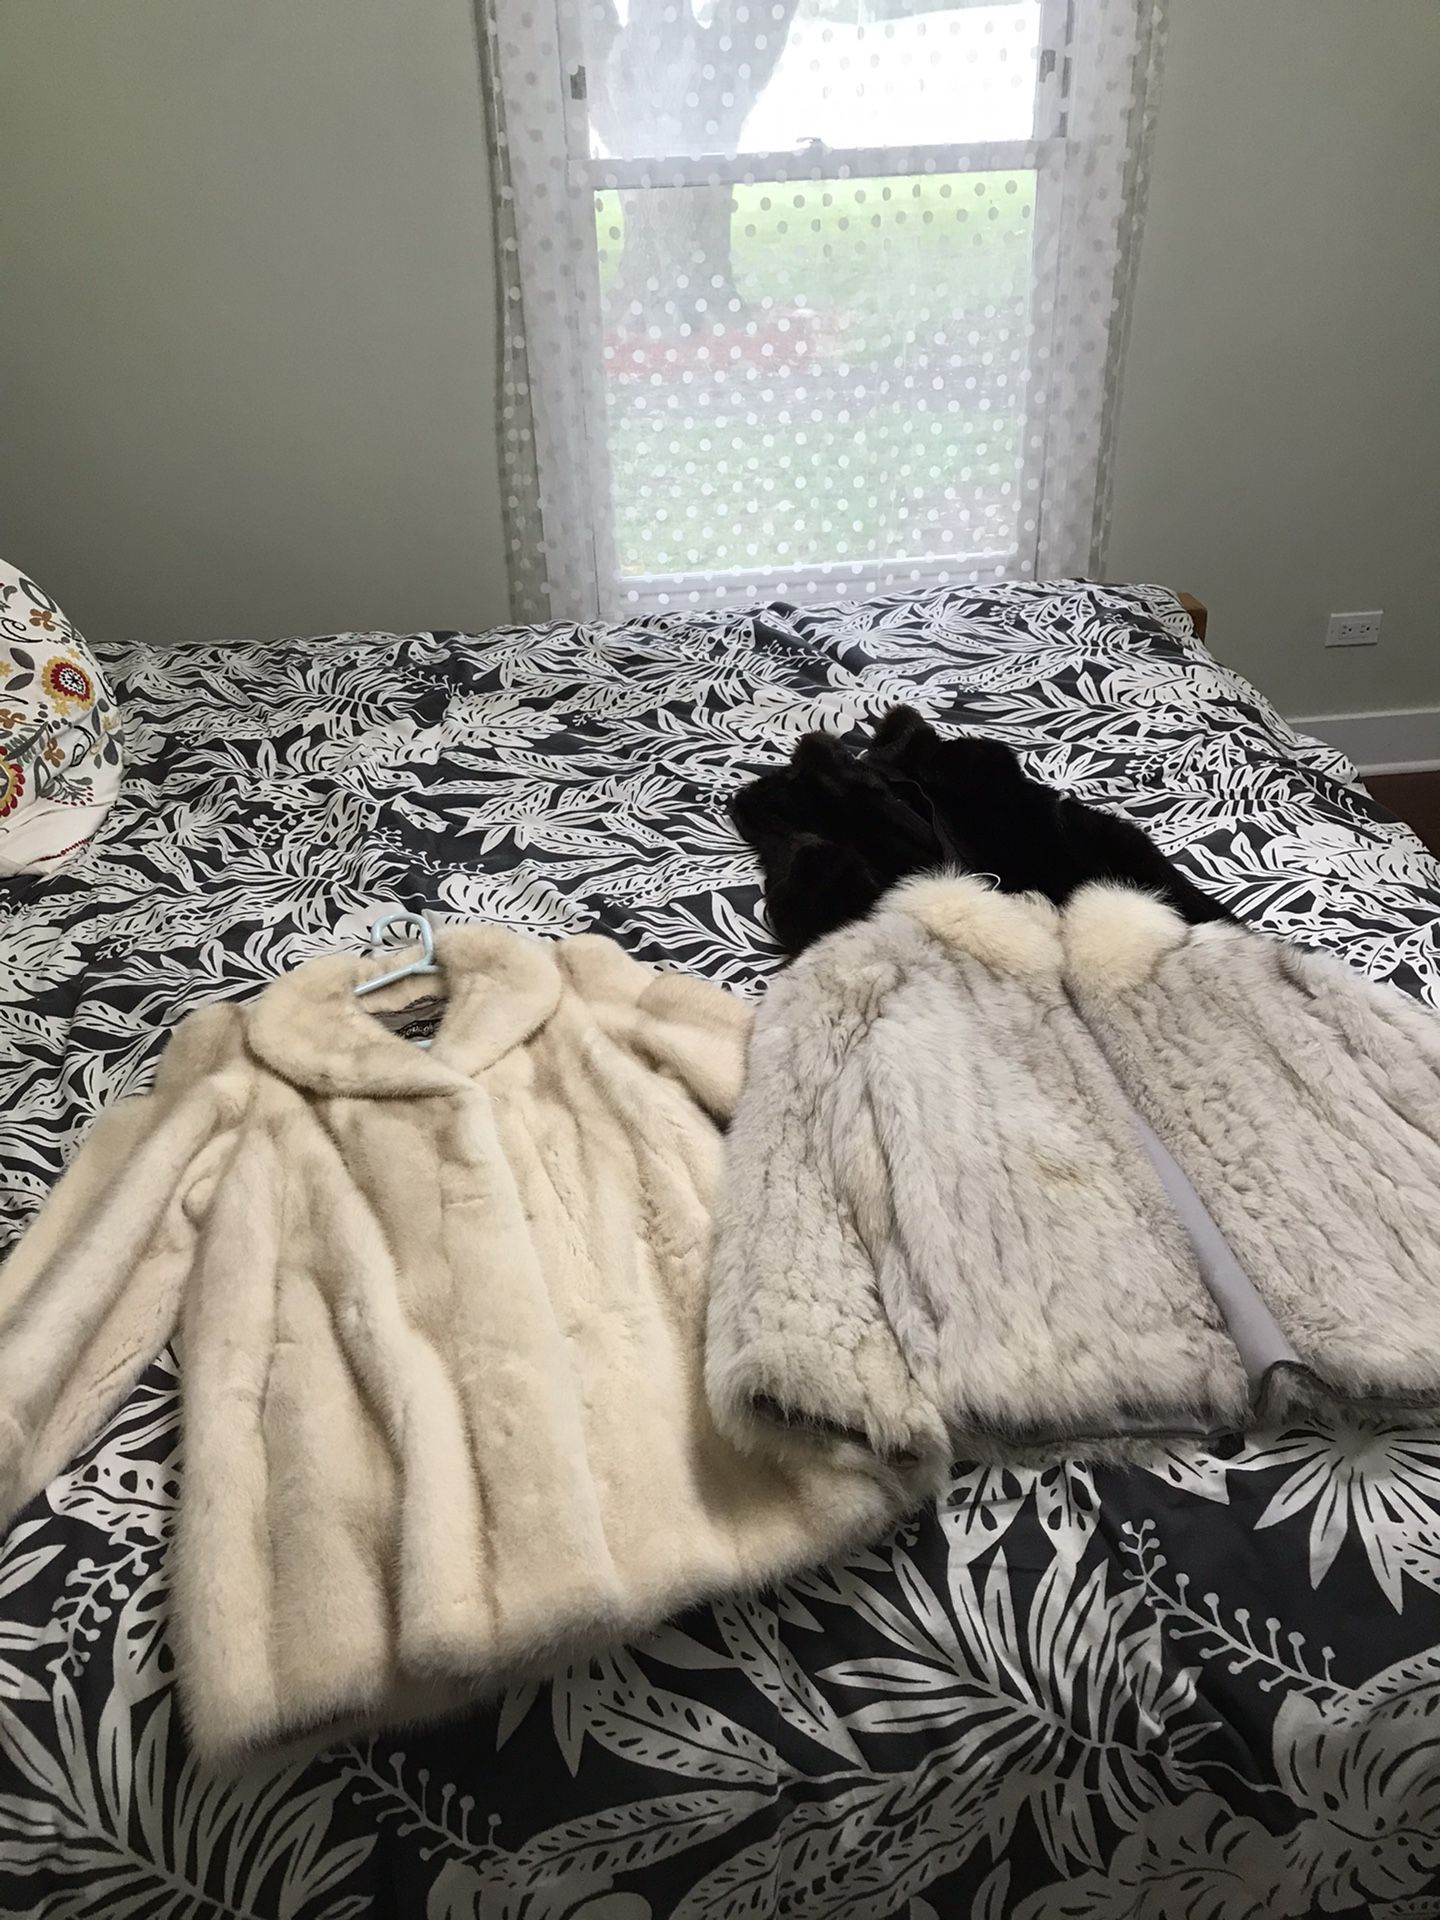 Real Fur Coats Small/Medium 